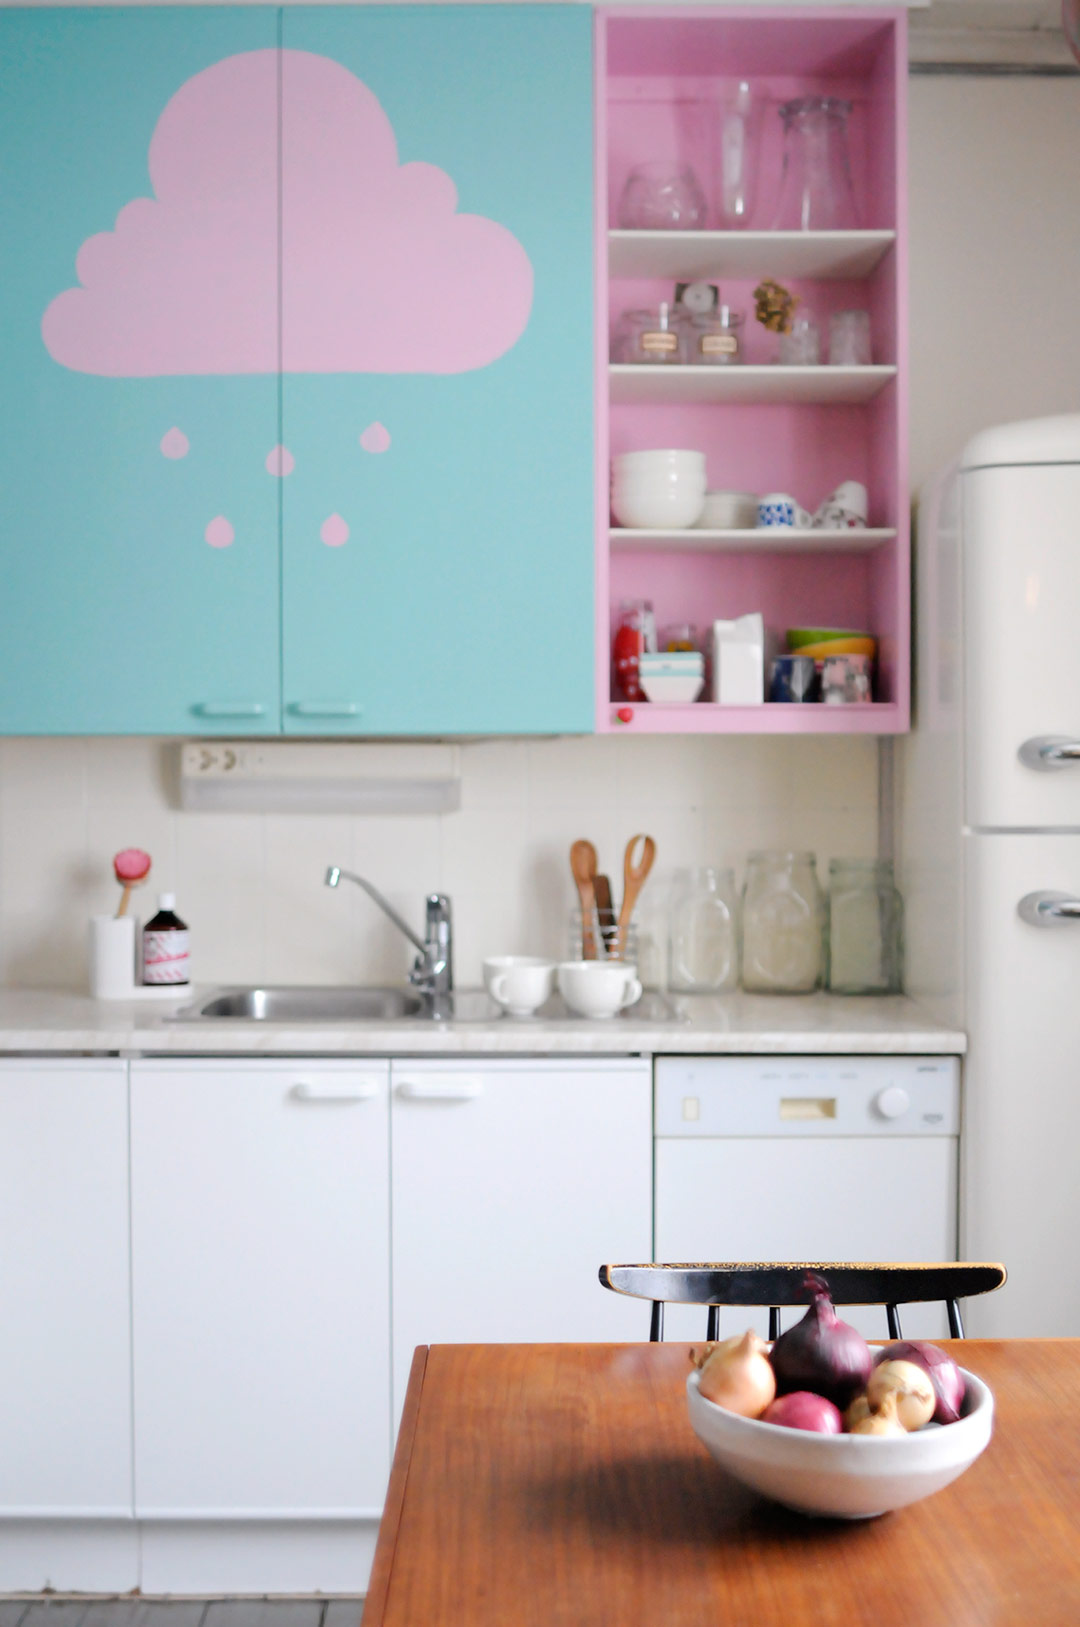 Vaaleanpunaisia pilvenhattaroita keittiönkaapeissa